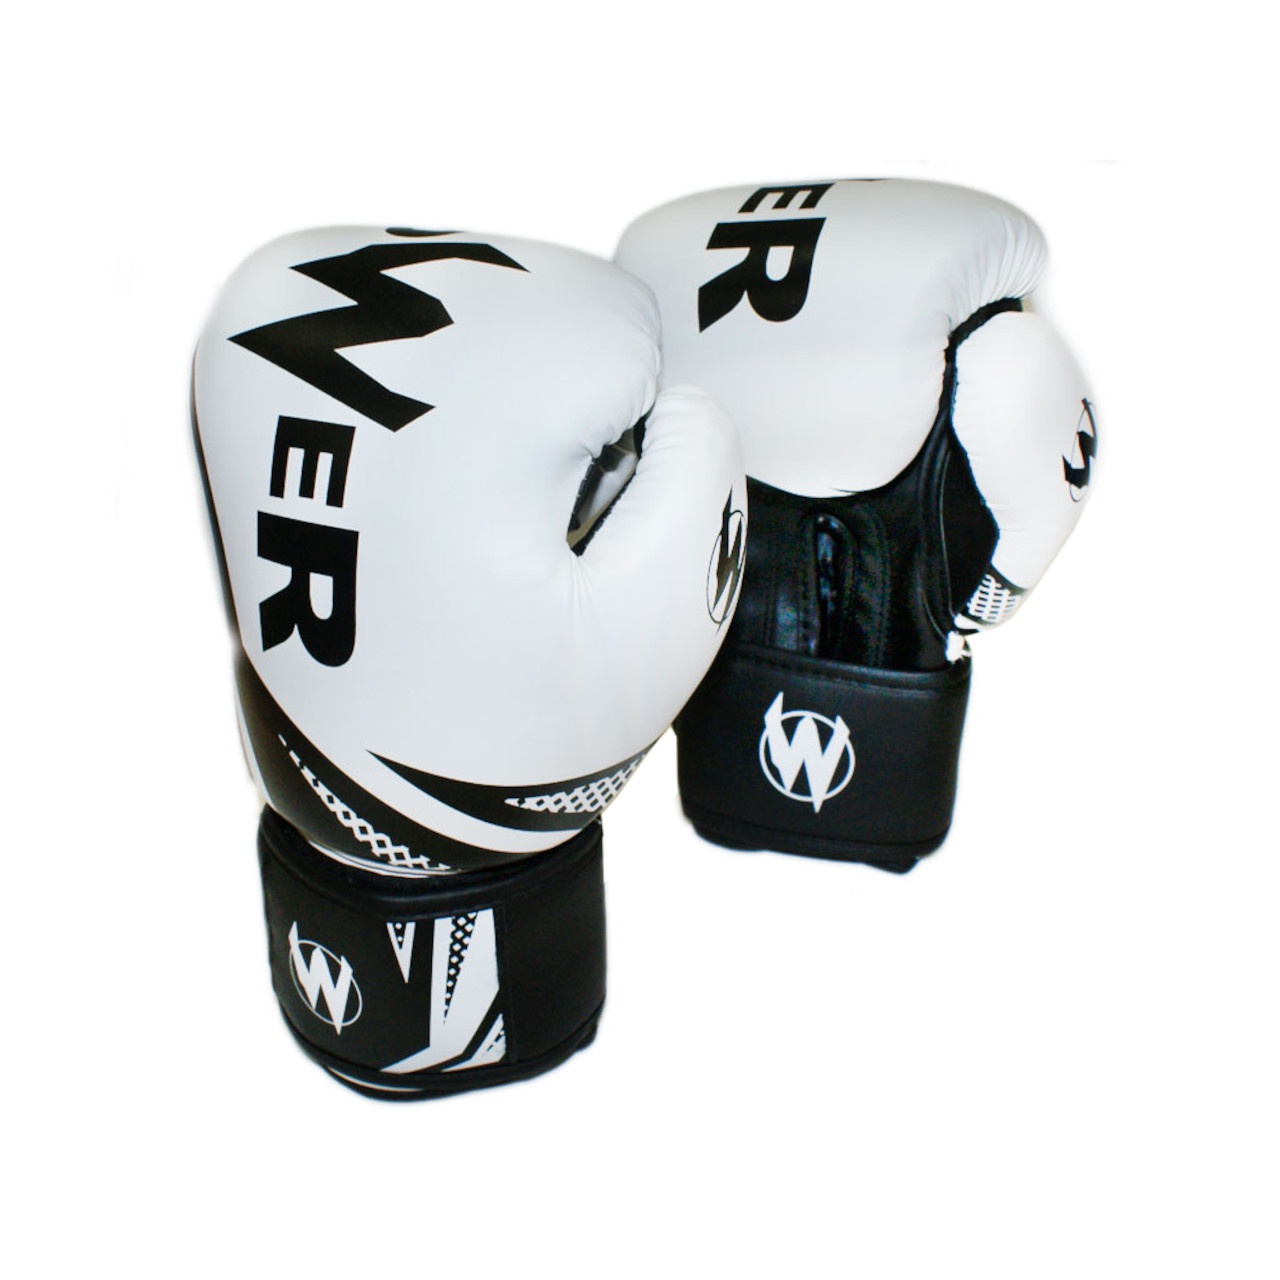 Рукавички боксерські POWER білі з чорними елементами 10 унцій POW-W-Б10